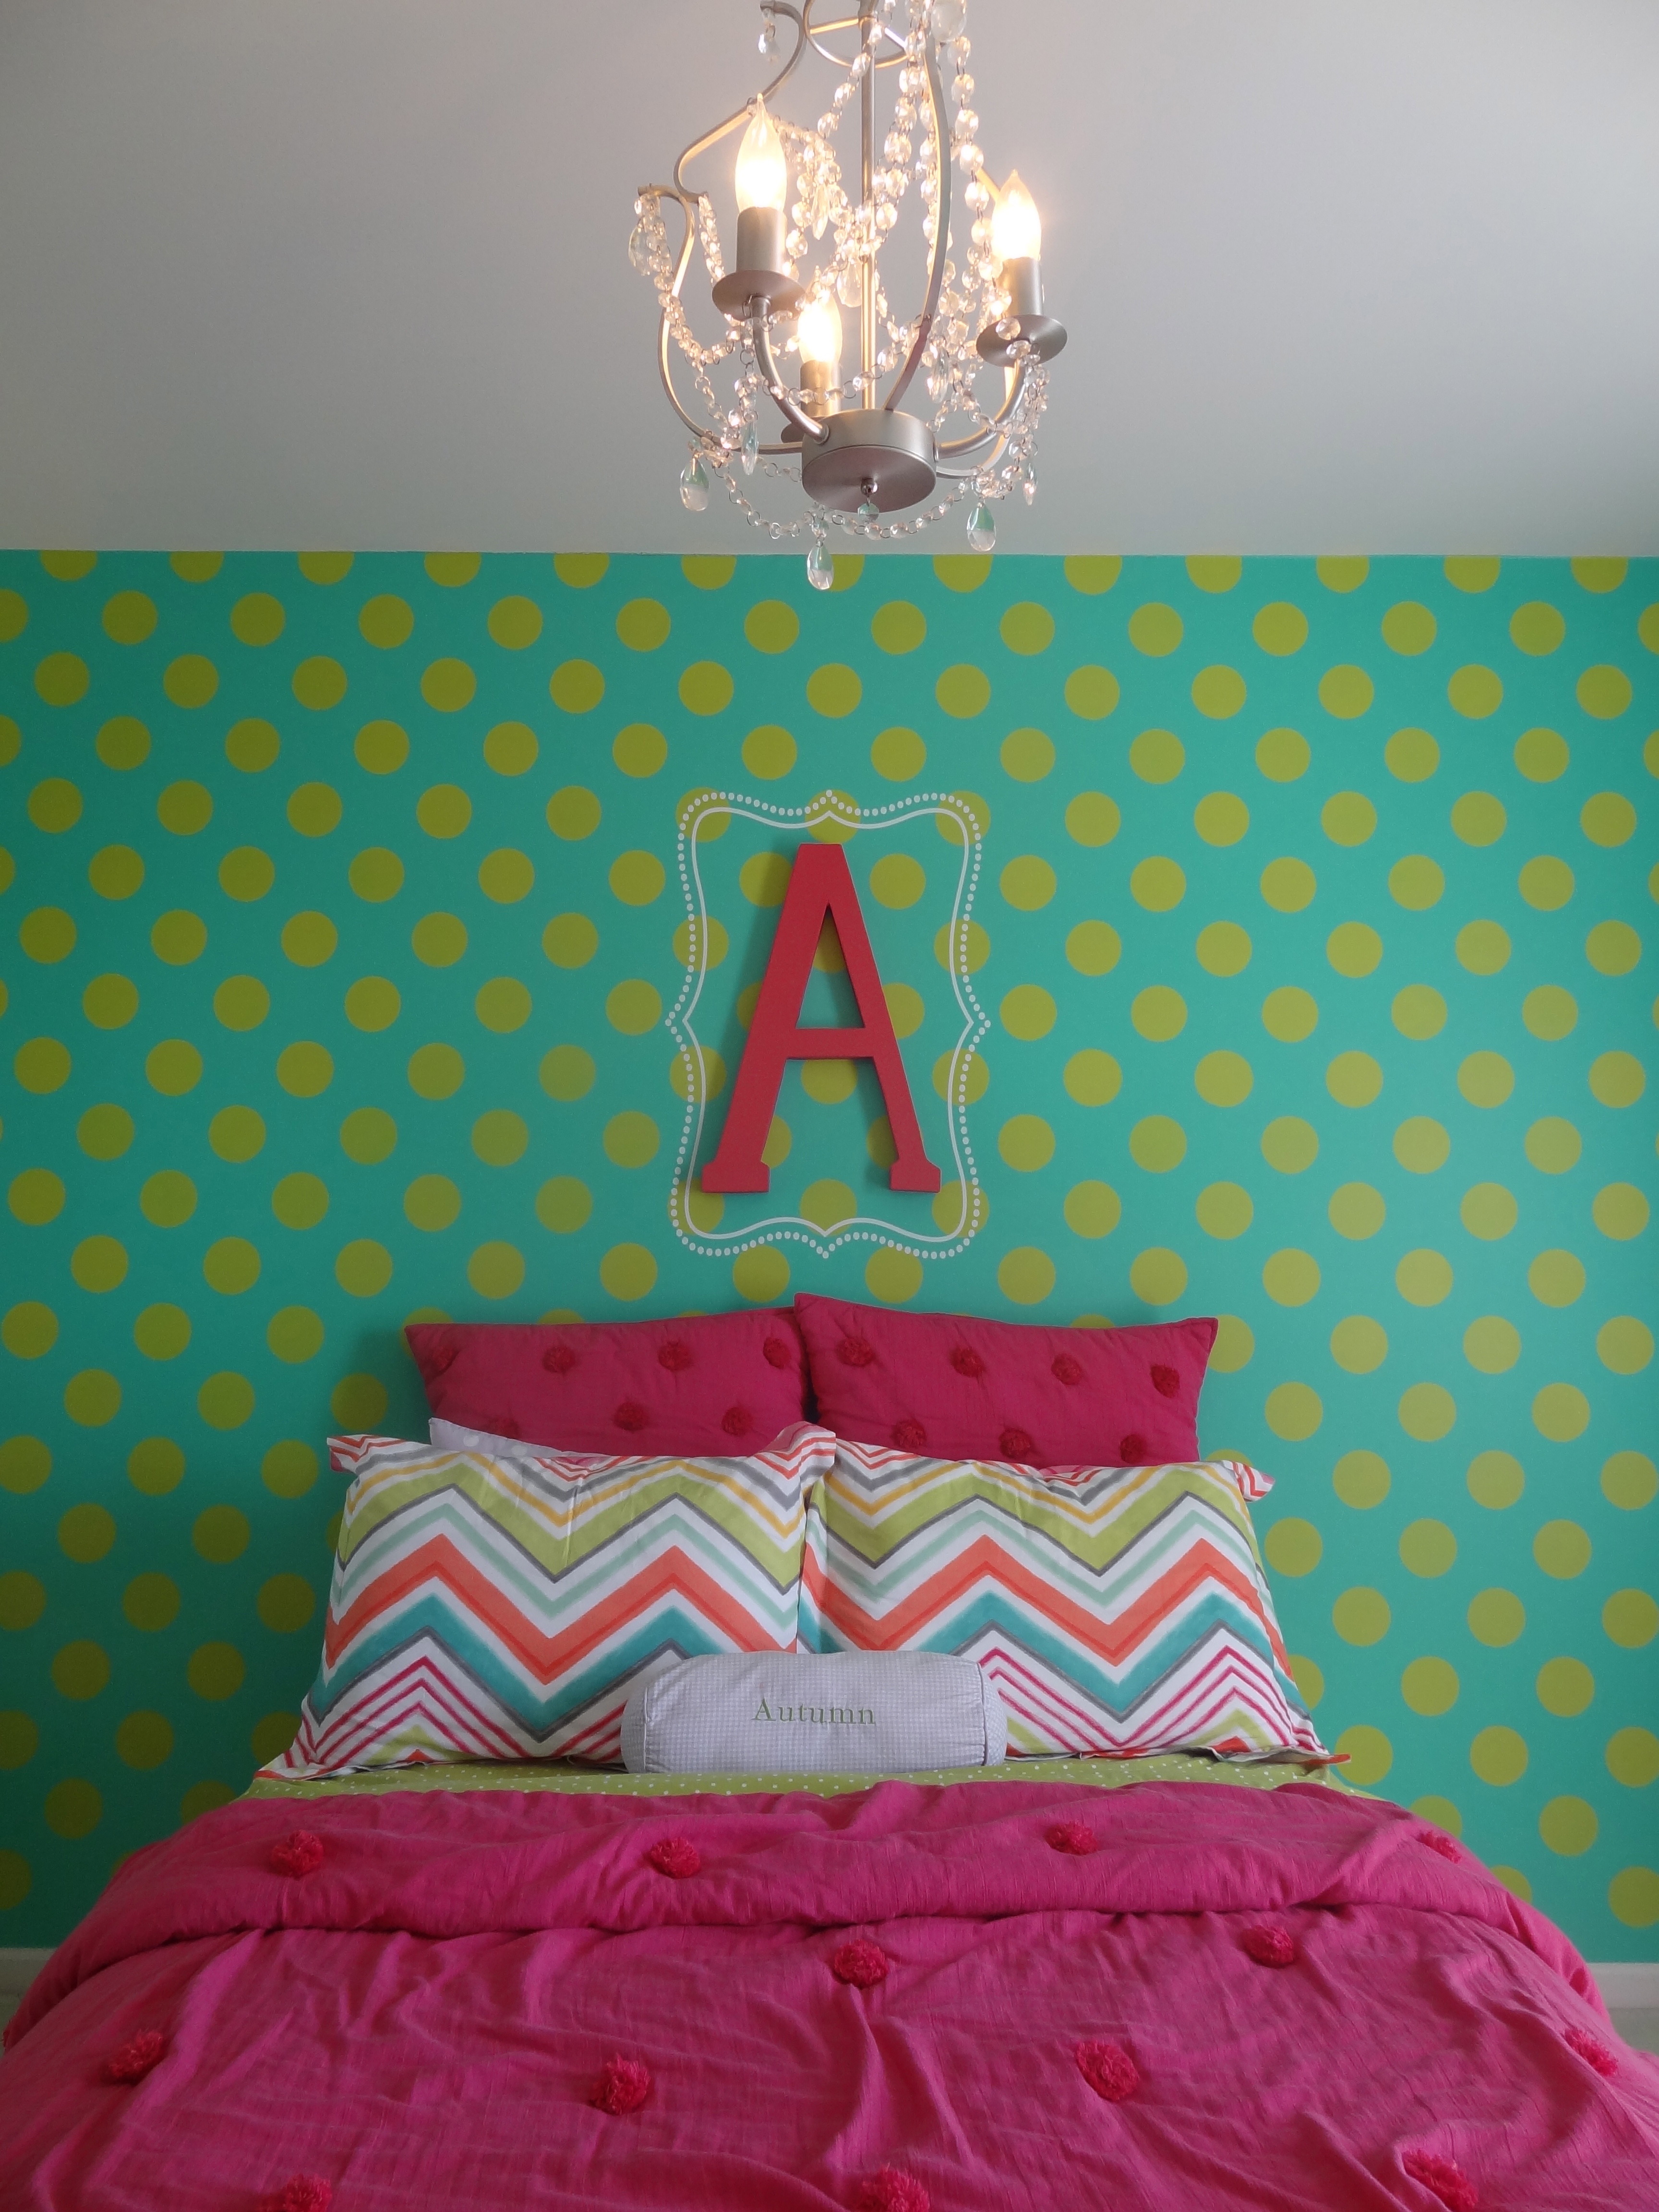 Polka Dot Accent Bedroom Wall